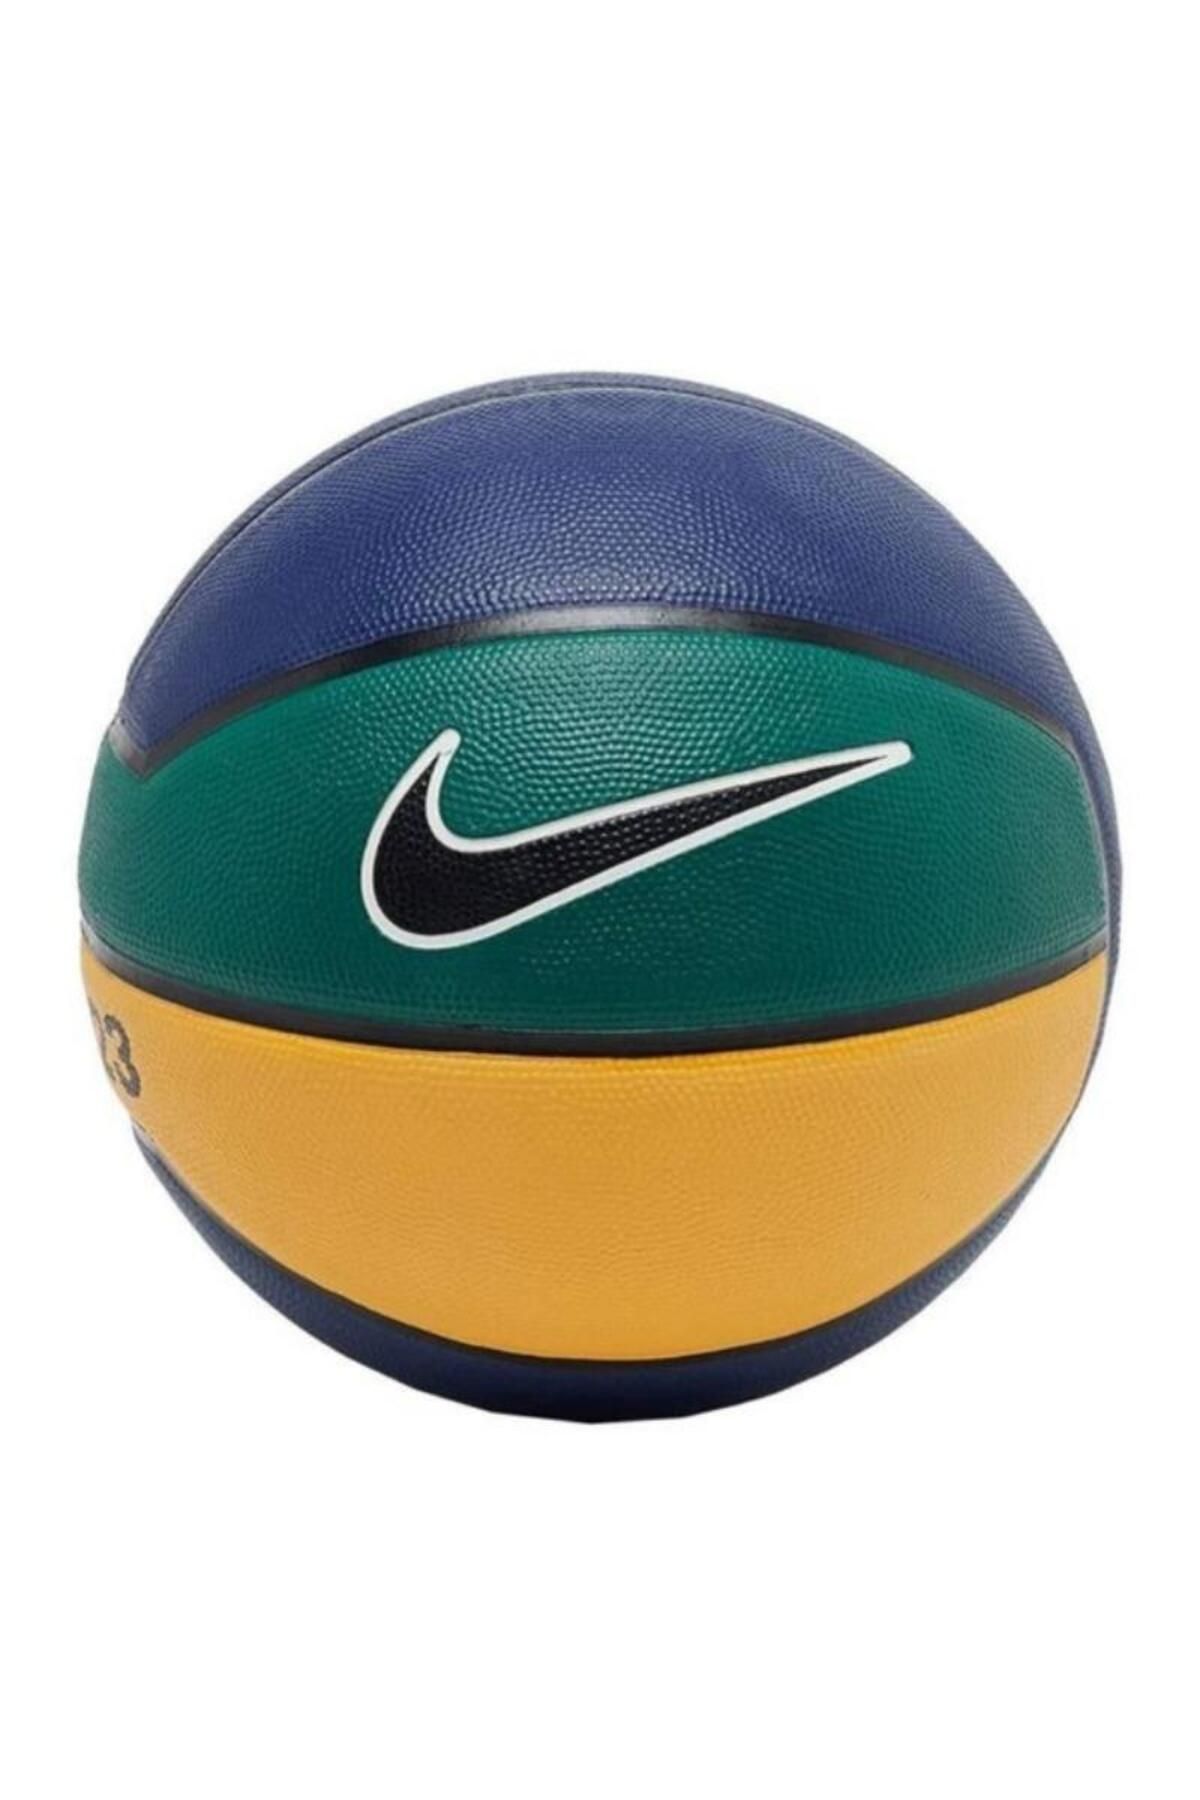 Nike Unisex Mavi Basketbol Topu N.000.2784.490.07-mavi